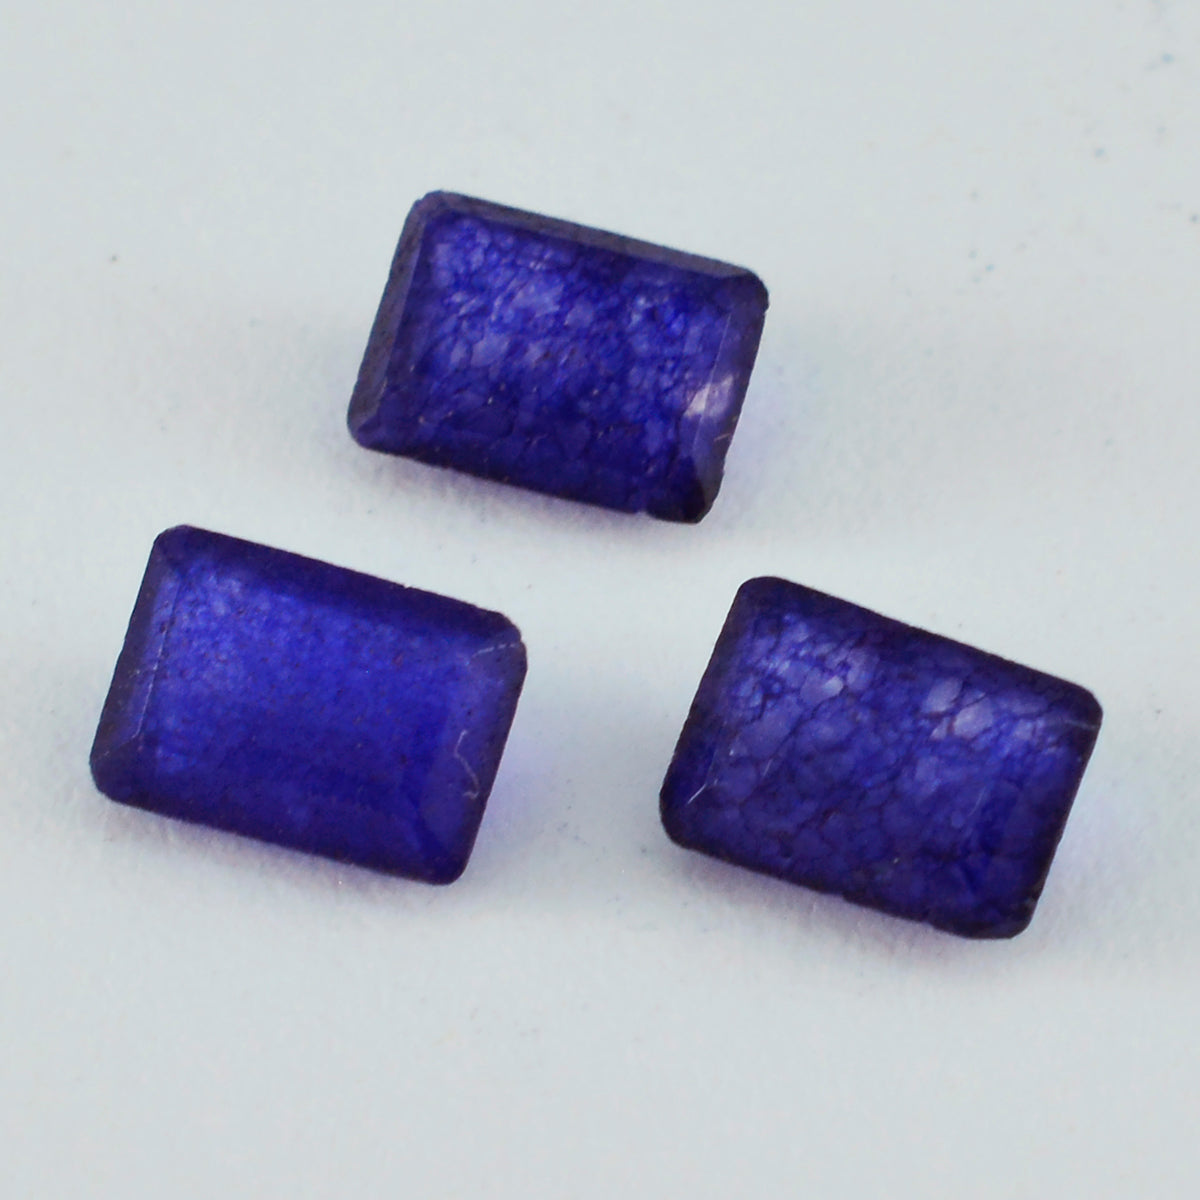 riyogems 1шт натуральная синяя яшма граненая 7x9 мм восьмиугольная форма красивый качественный драгоценный камень